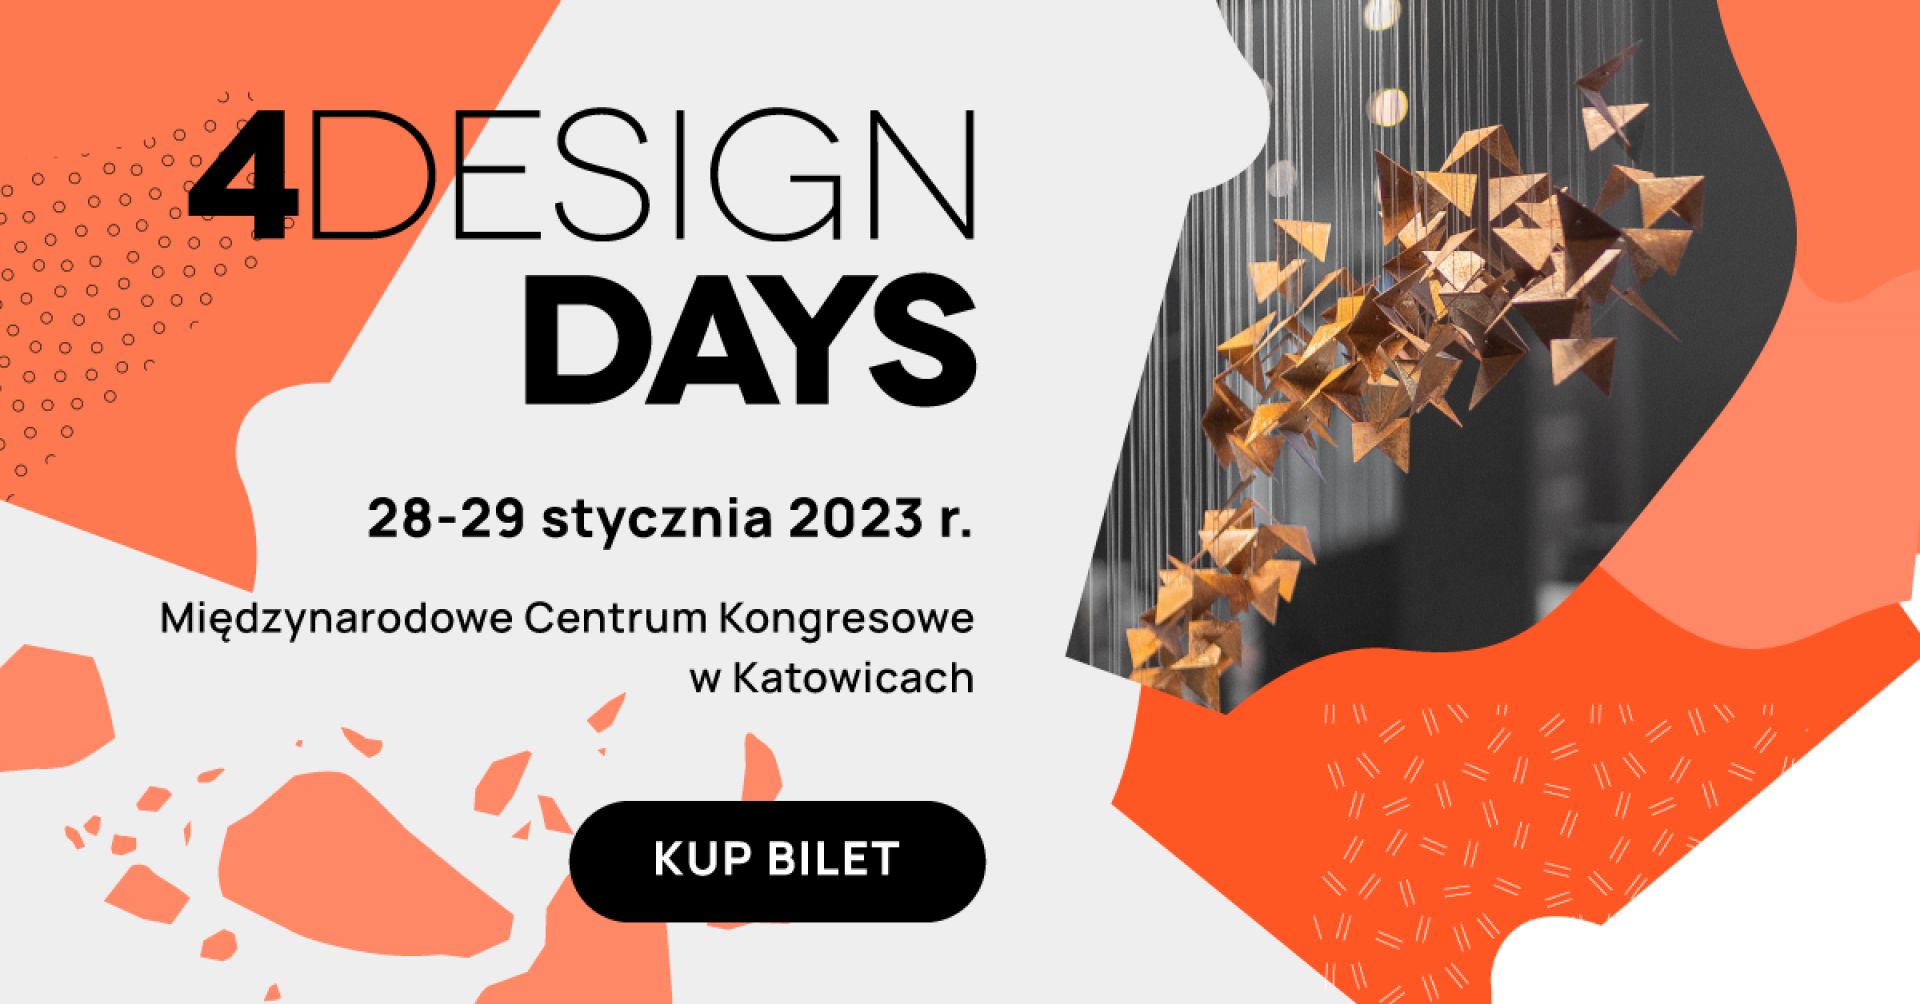 Dni Otwarte 4 Design Days - zapraszamy 28 i 29 stycznia 2023 roku do Międzynarodowego Centrum Kongresowego w Katowicach!